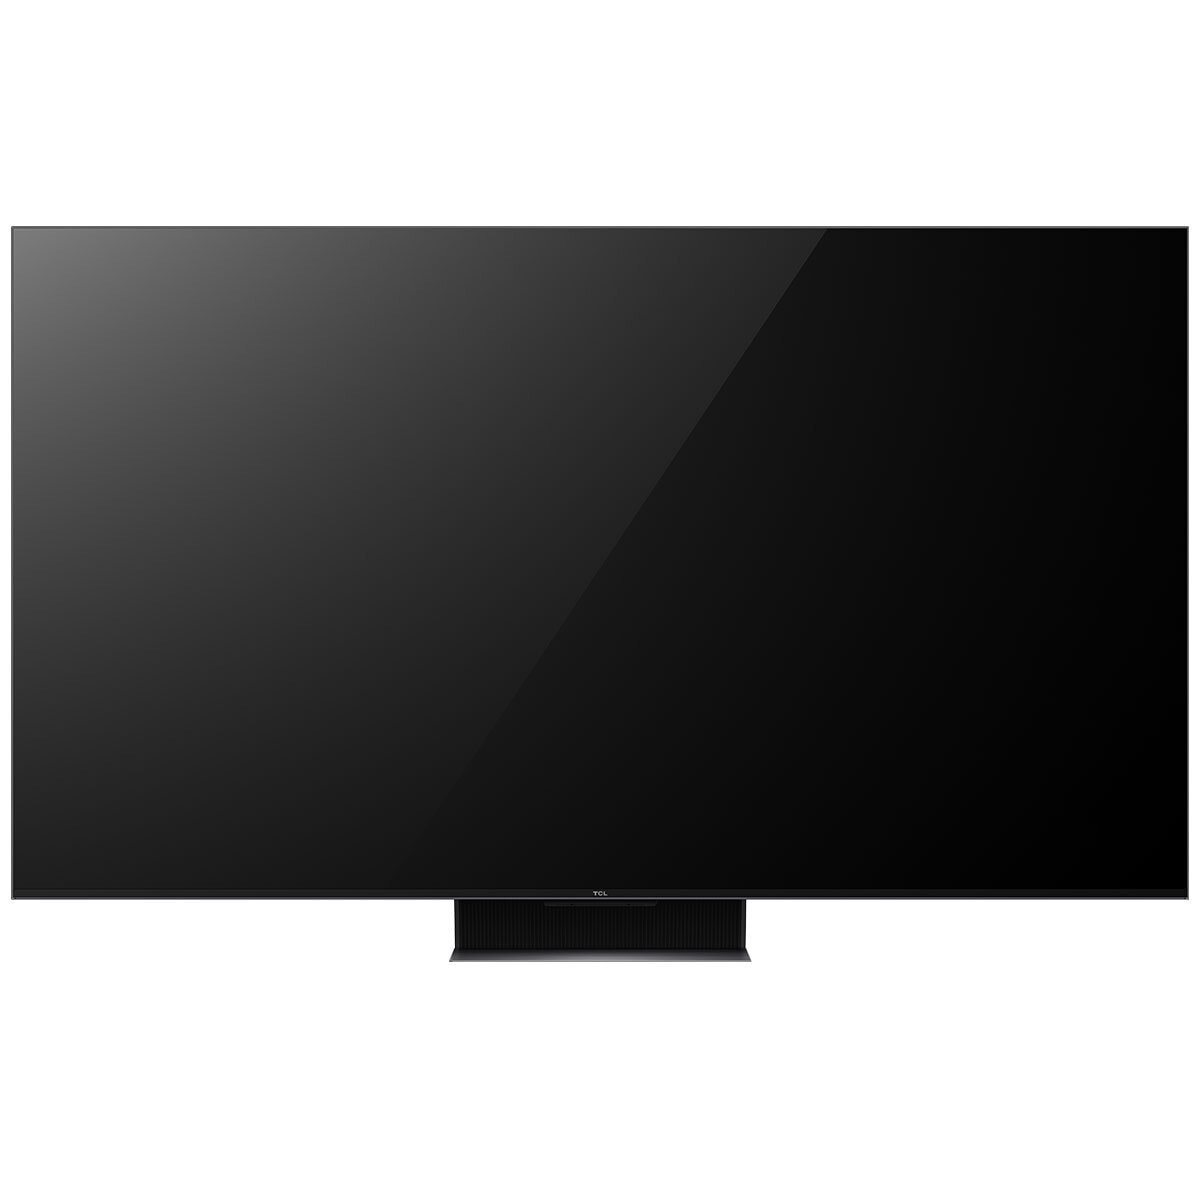 TCL 65 Inch 4K Mini LED Google TV 65C845